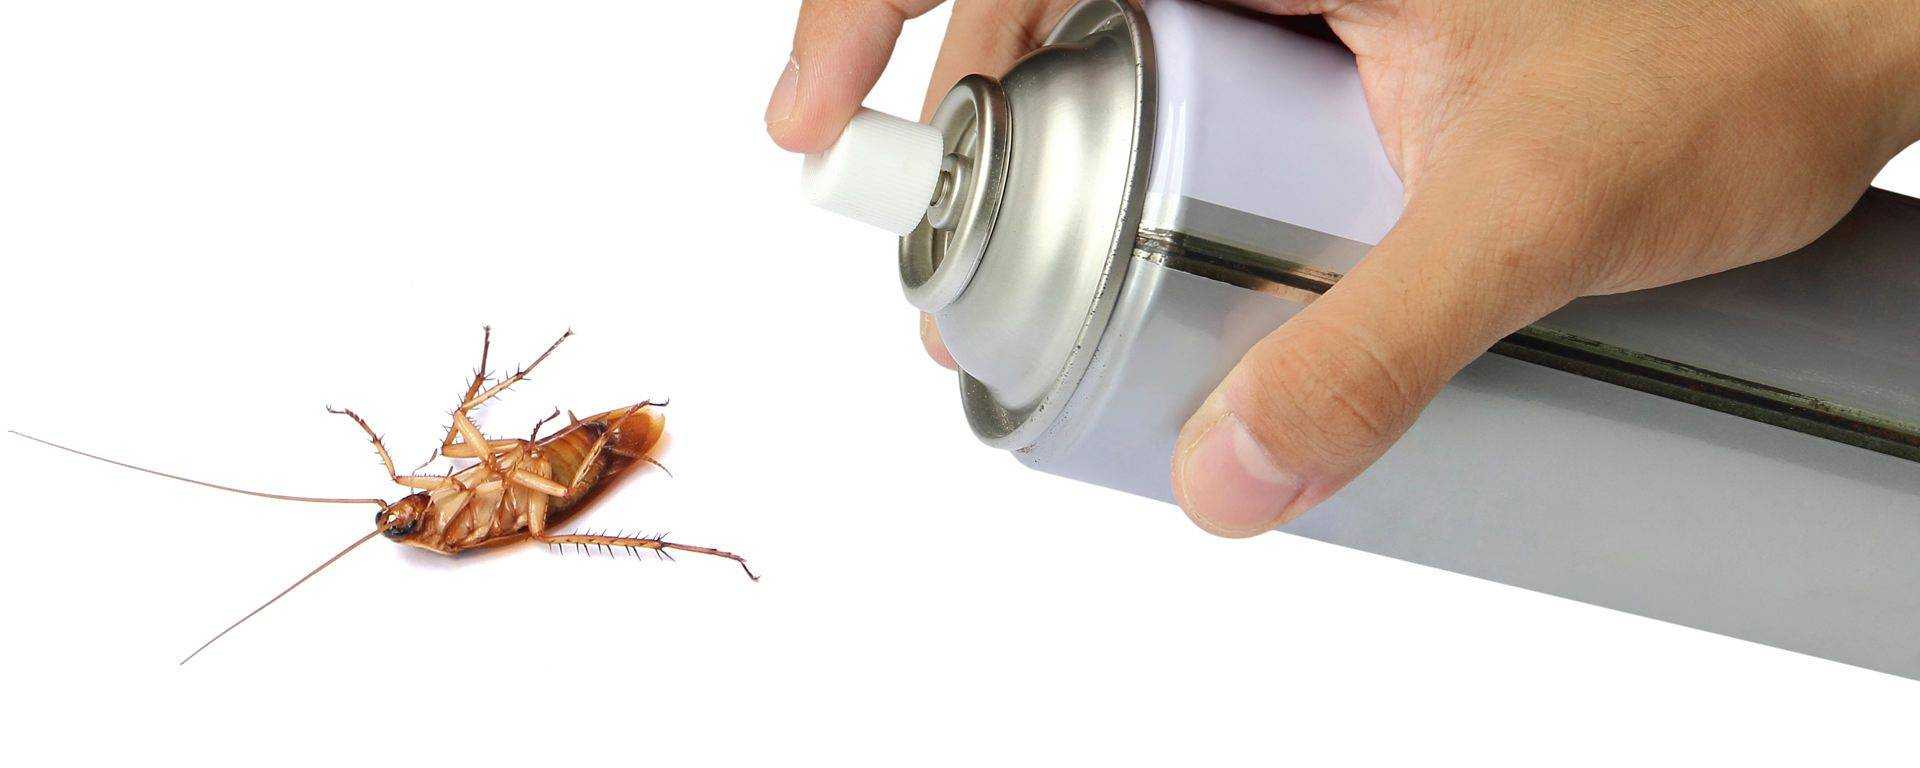 Тараканы в машине: что делать и откуда берутся, как избавиться от них?